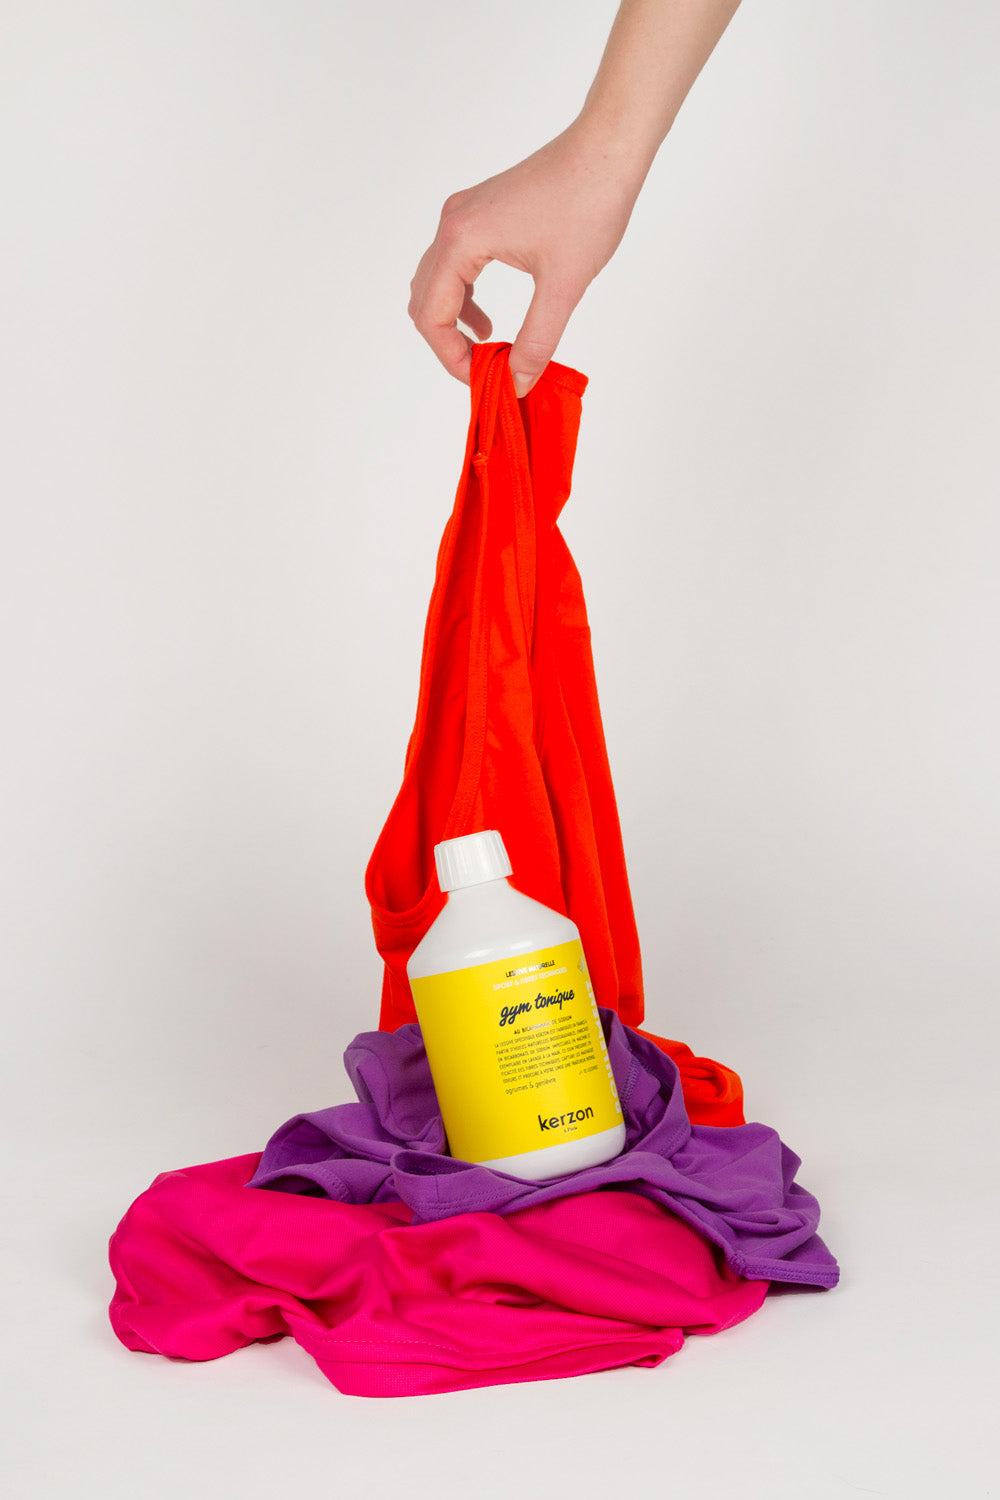 (Sample) Gym Tonique natural laundry detergent Kerzon Suisse